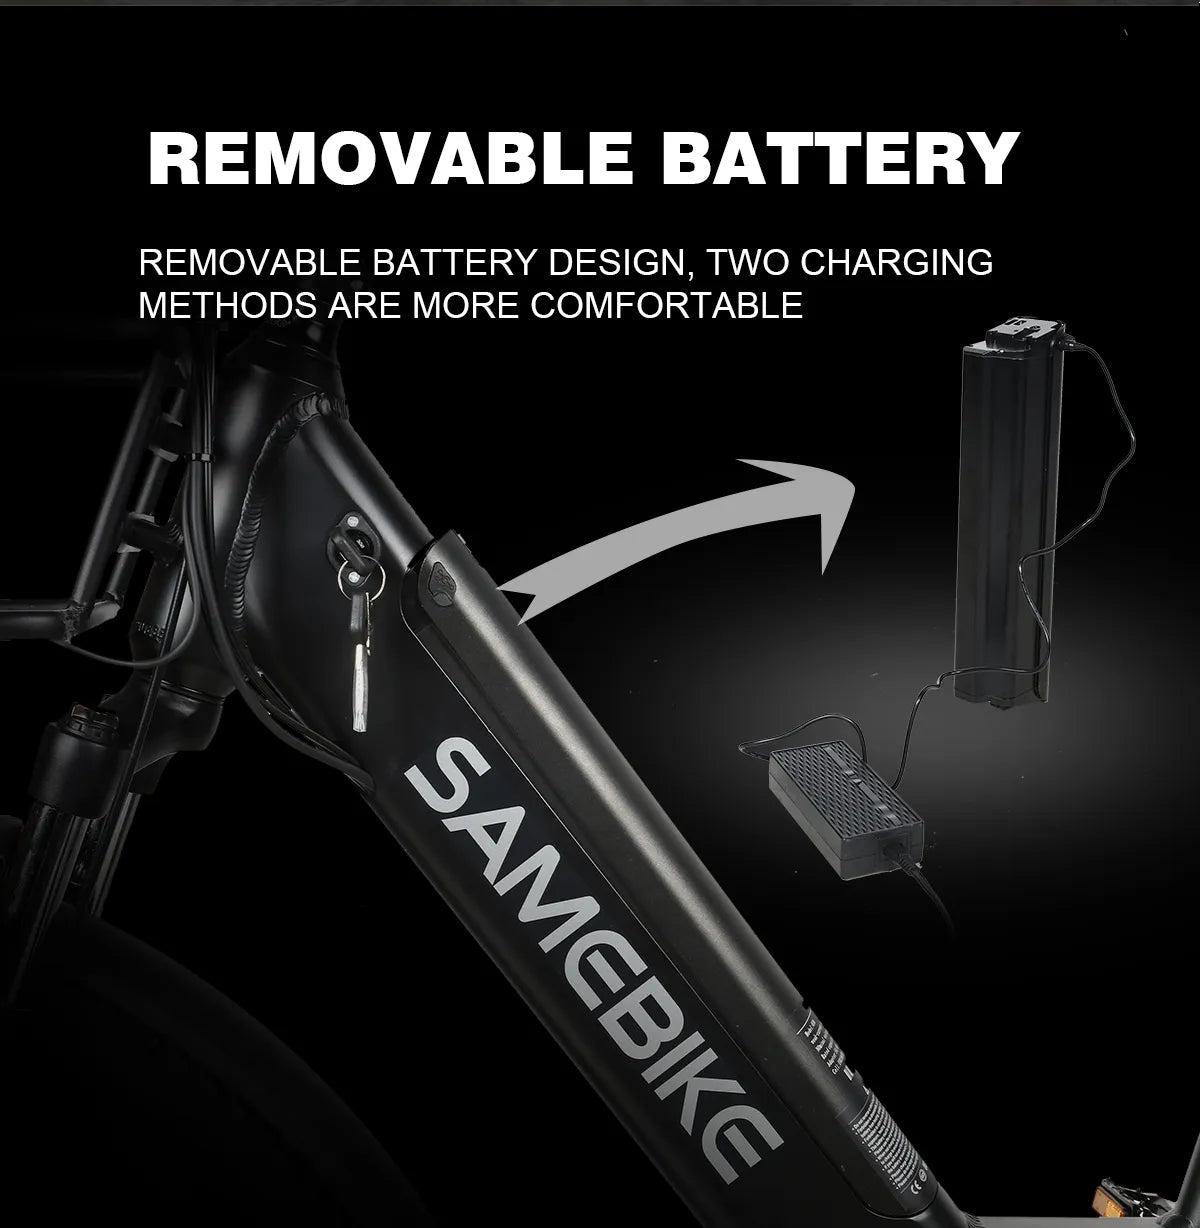 SAMEBIKE RS-A01 Electric Bike - Pogo Cycles